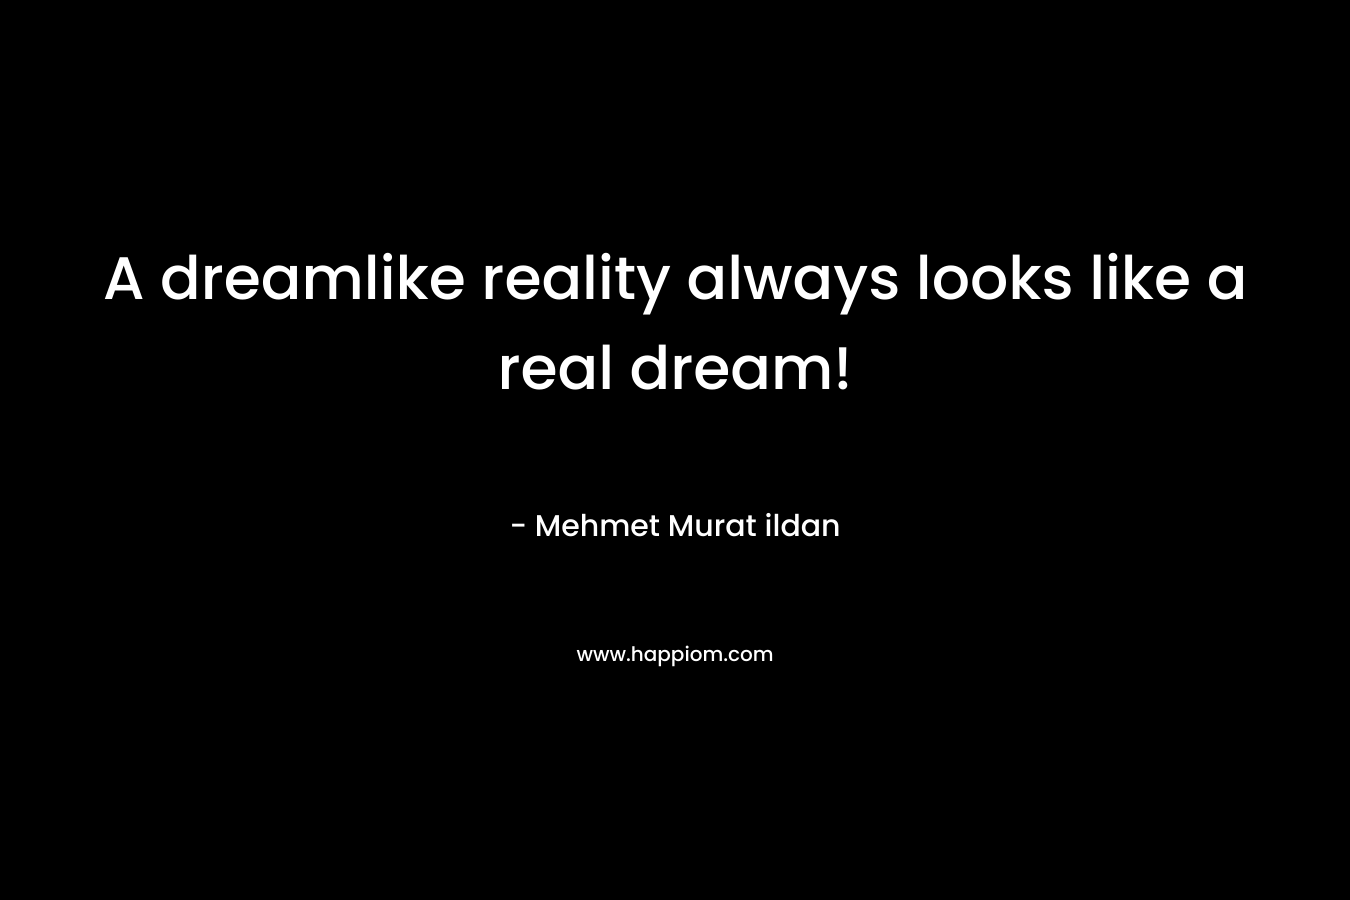 A dreamlike reality always looks like a real dream!